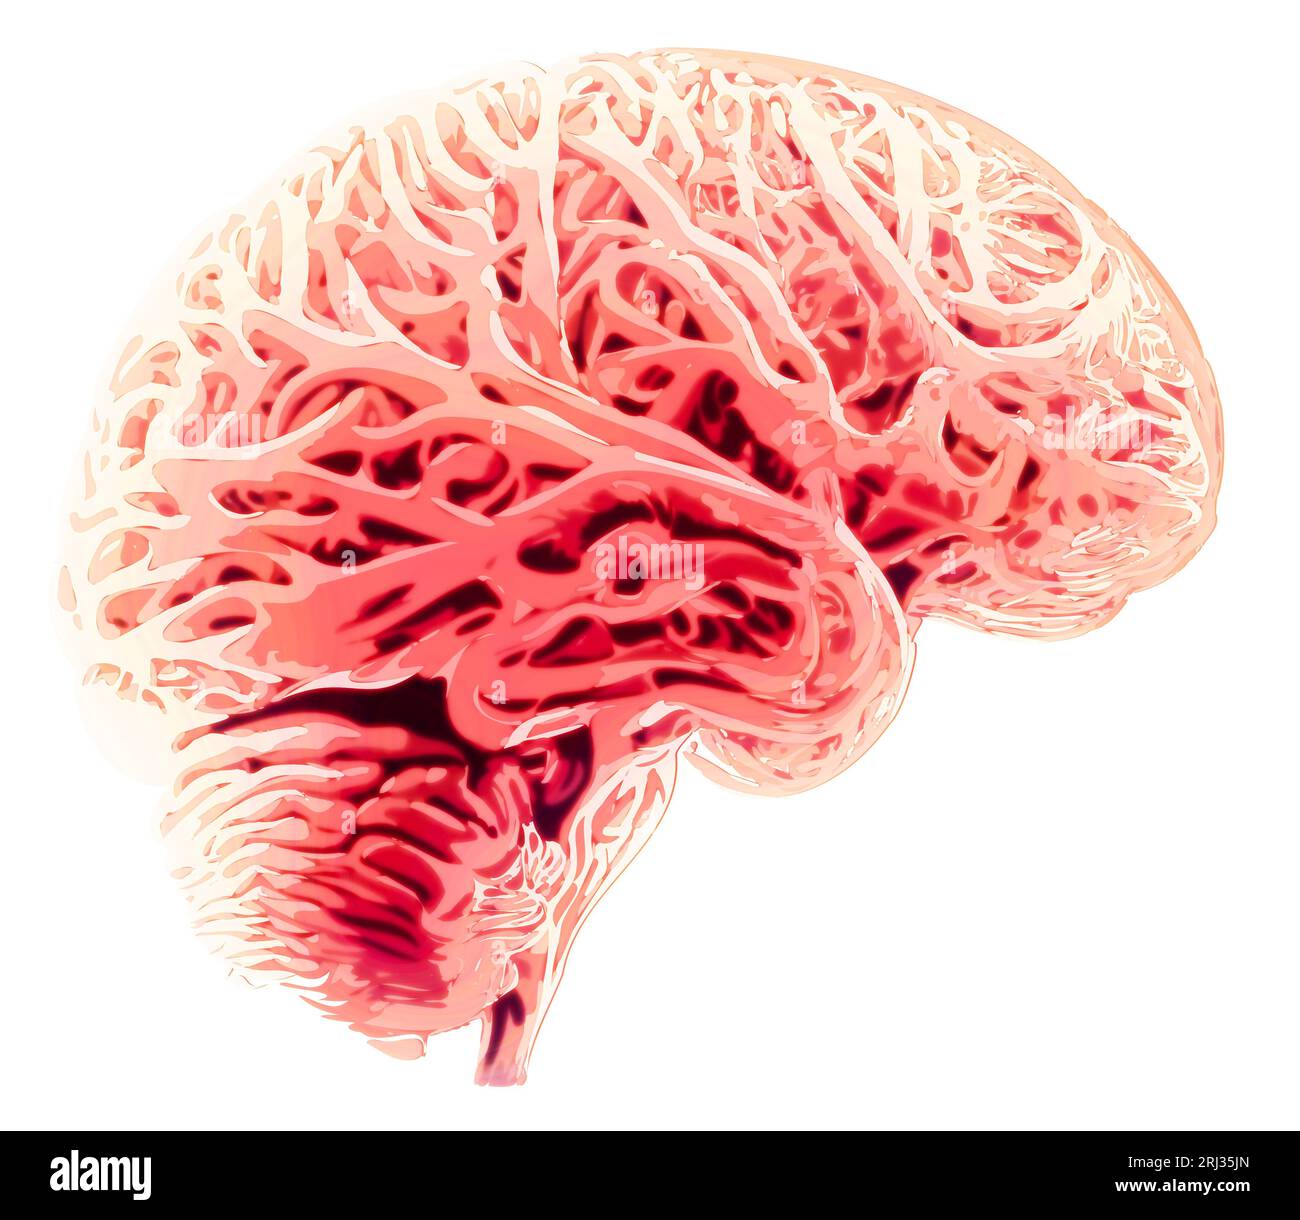 Vue latérale d'un cerveau, dessin. Maladies dégénératives du cerveau, Parkinson, synapses, neurones, Alzheimer Banque D'Images